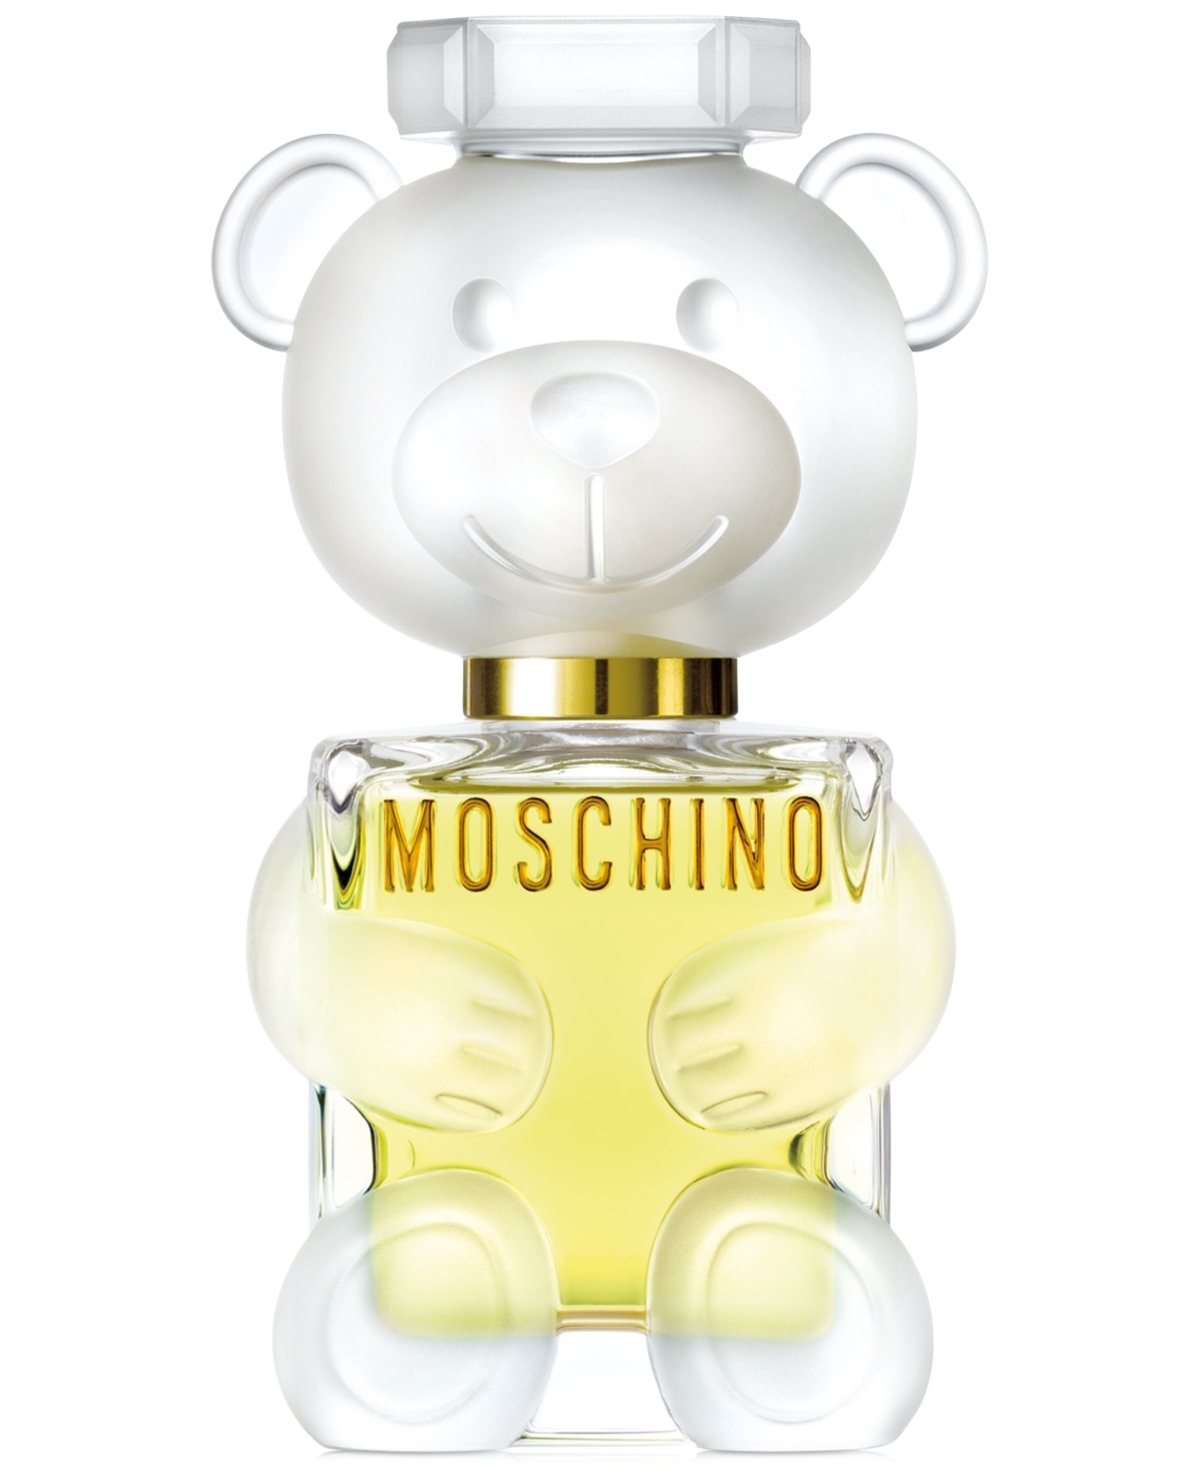 Moschino MOSCHINO TOY 2 1.7oz/50mL Eau de Parfum Spray